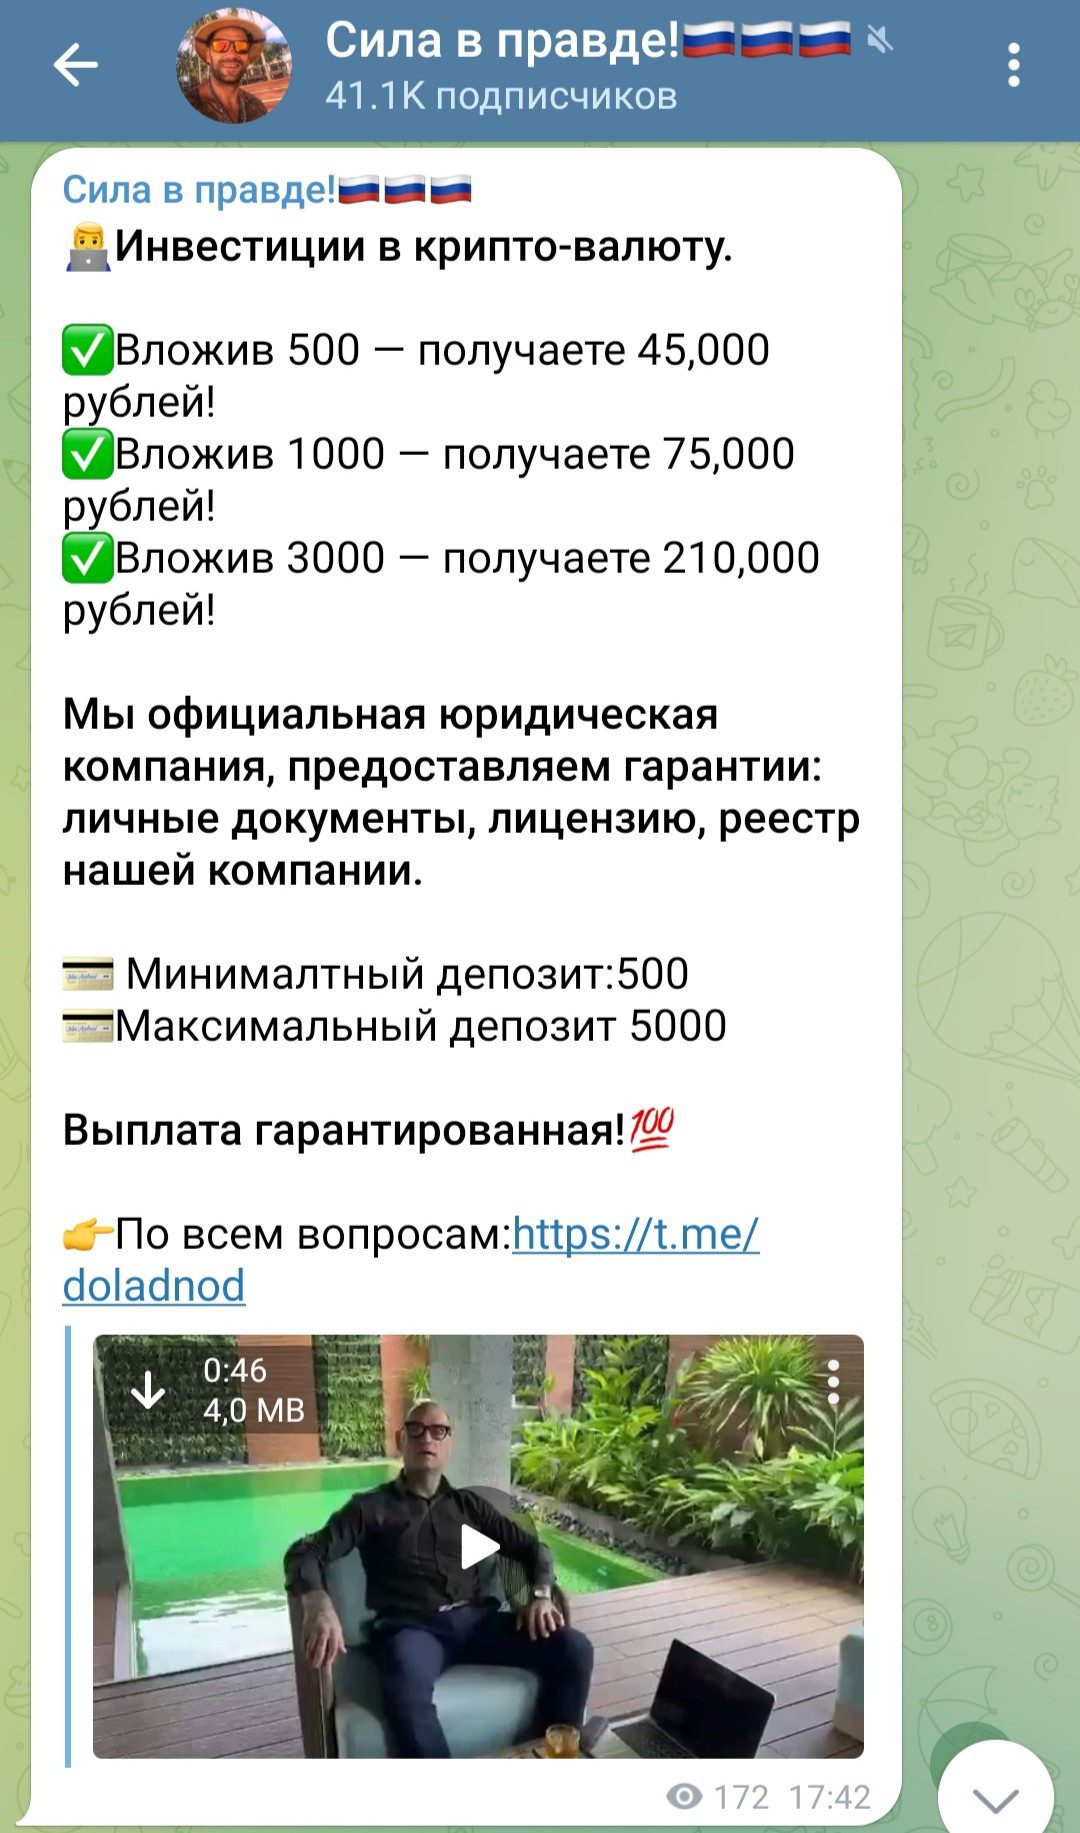 Радислав Сила в Правде телеграм инвестиции в криптовалюту